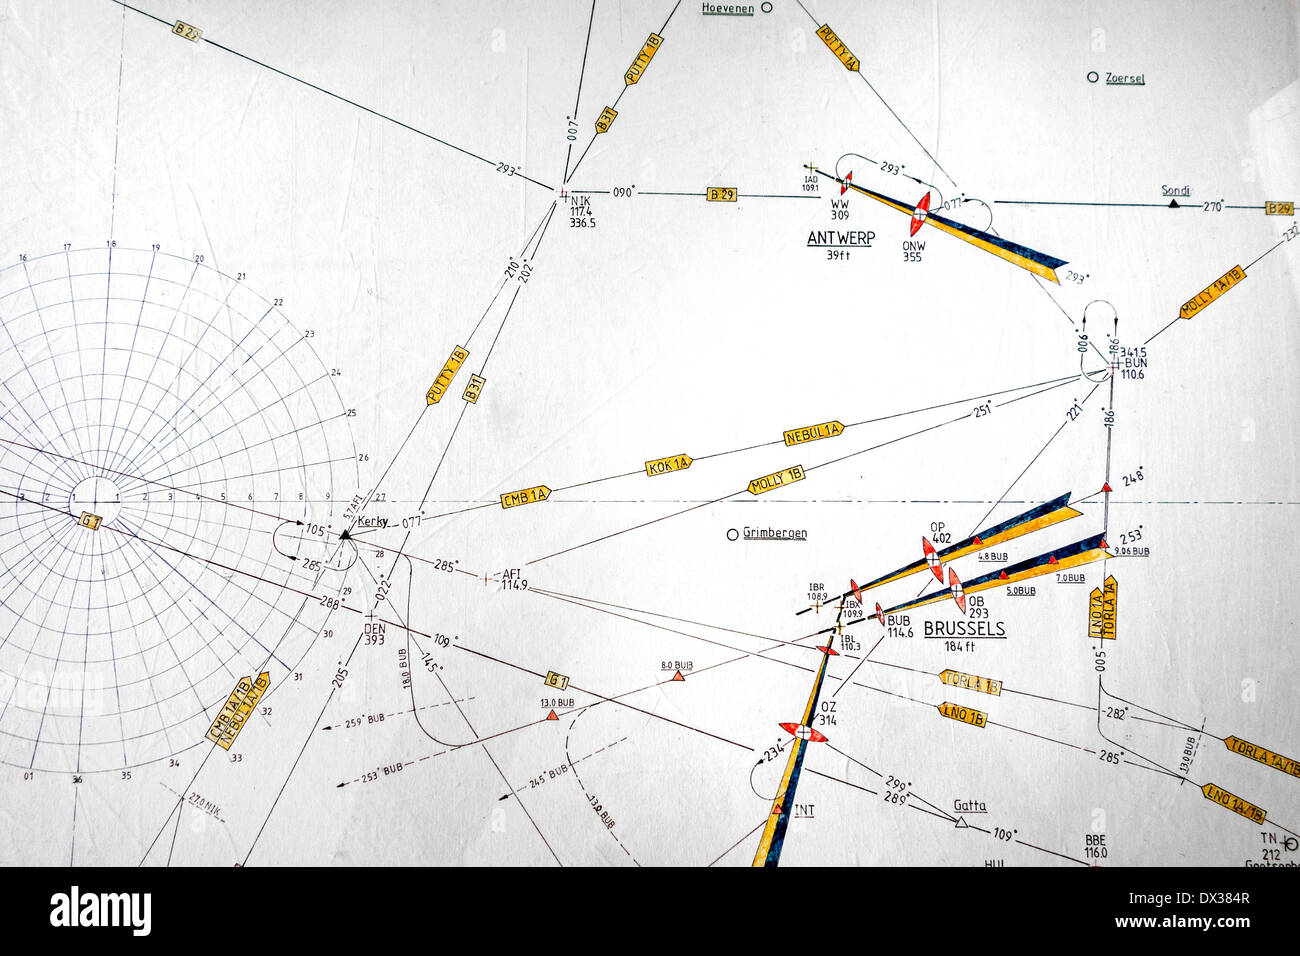 Luftfahrtkarte, Karte zeigt Symbole für Wegpunkte und Flugrouten entwickelt, um die Navigation von Flugzeugen zu unterstützen Stockfoto